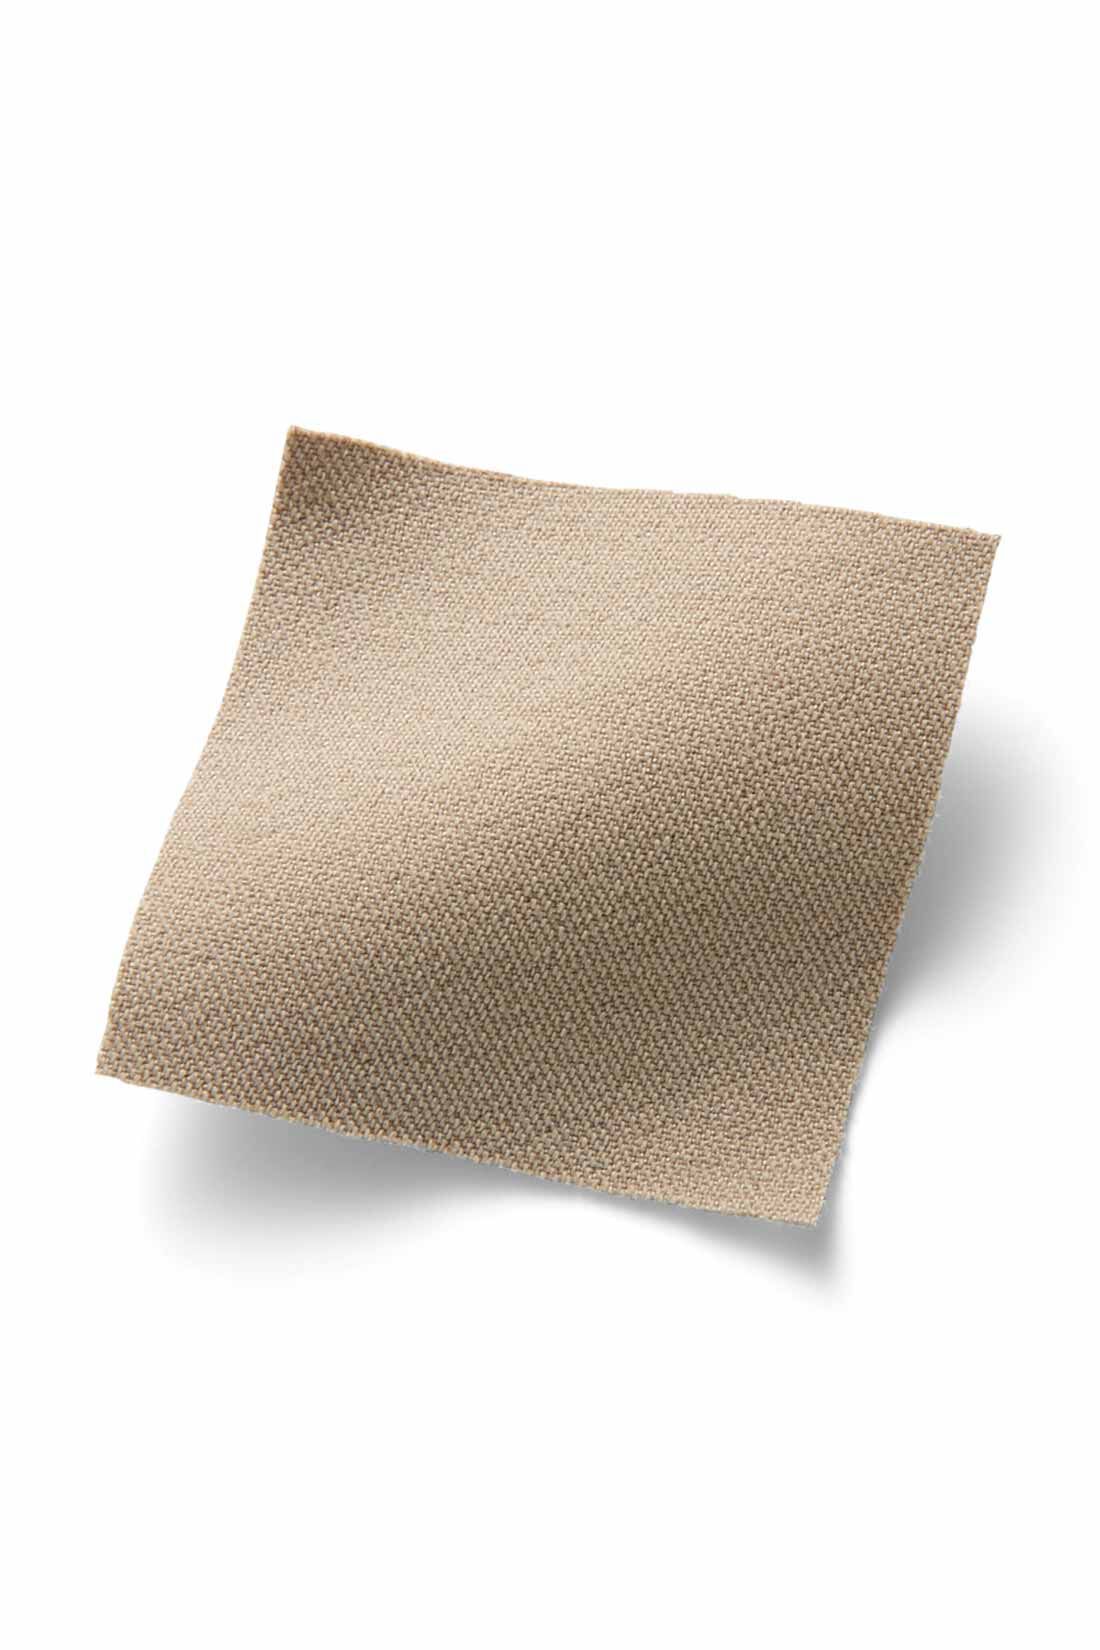 IEDIT[イディット]　ぐいっとしなやか すらりと美脚！ ストレッチ布はく素材のエアノビワイドパンツ〈ベージュ〉|ストレッチ素材ながら綿のようなマットな表面感が品よくきれい。脚のラインを拾いにくい厚みと張り感で高見えします。